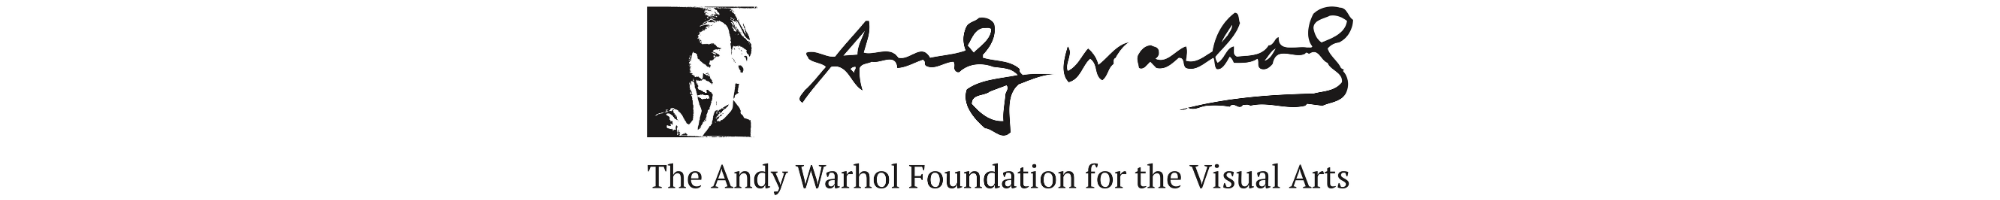 Andy Warhol Foundation Logo Final